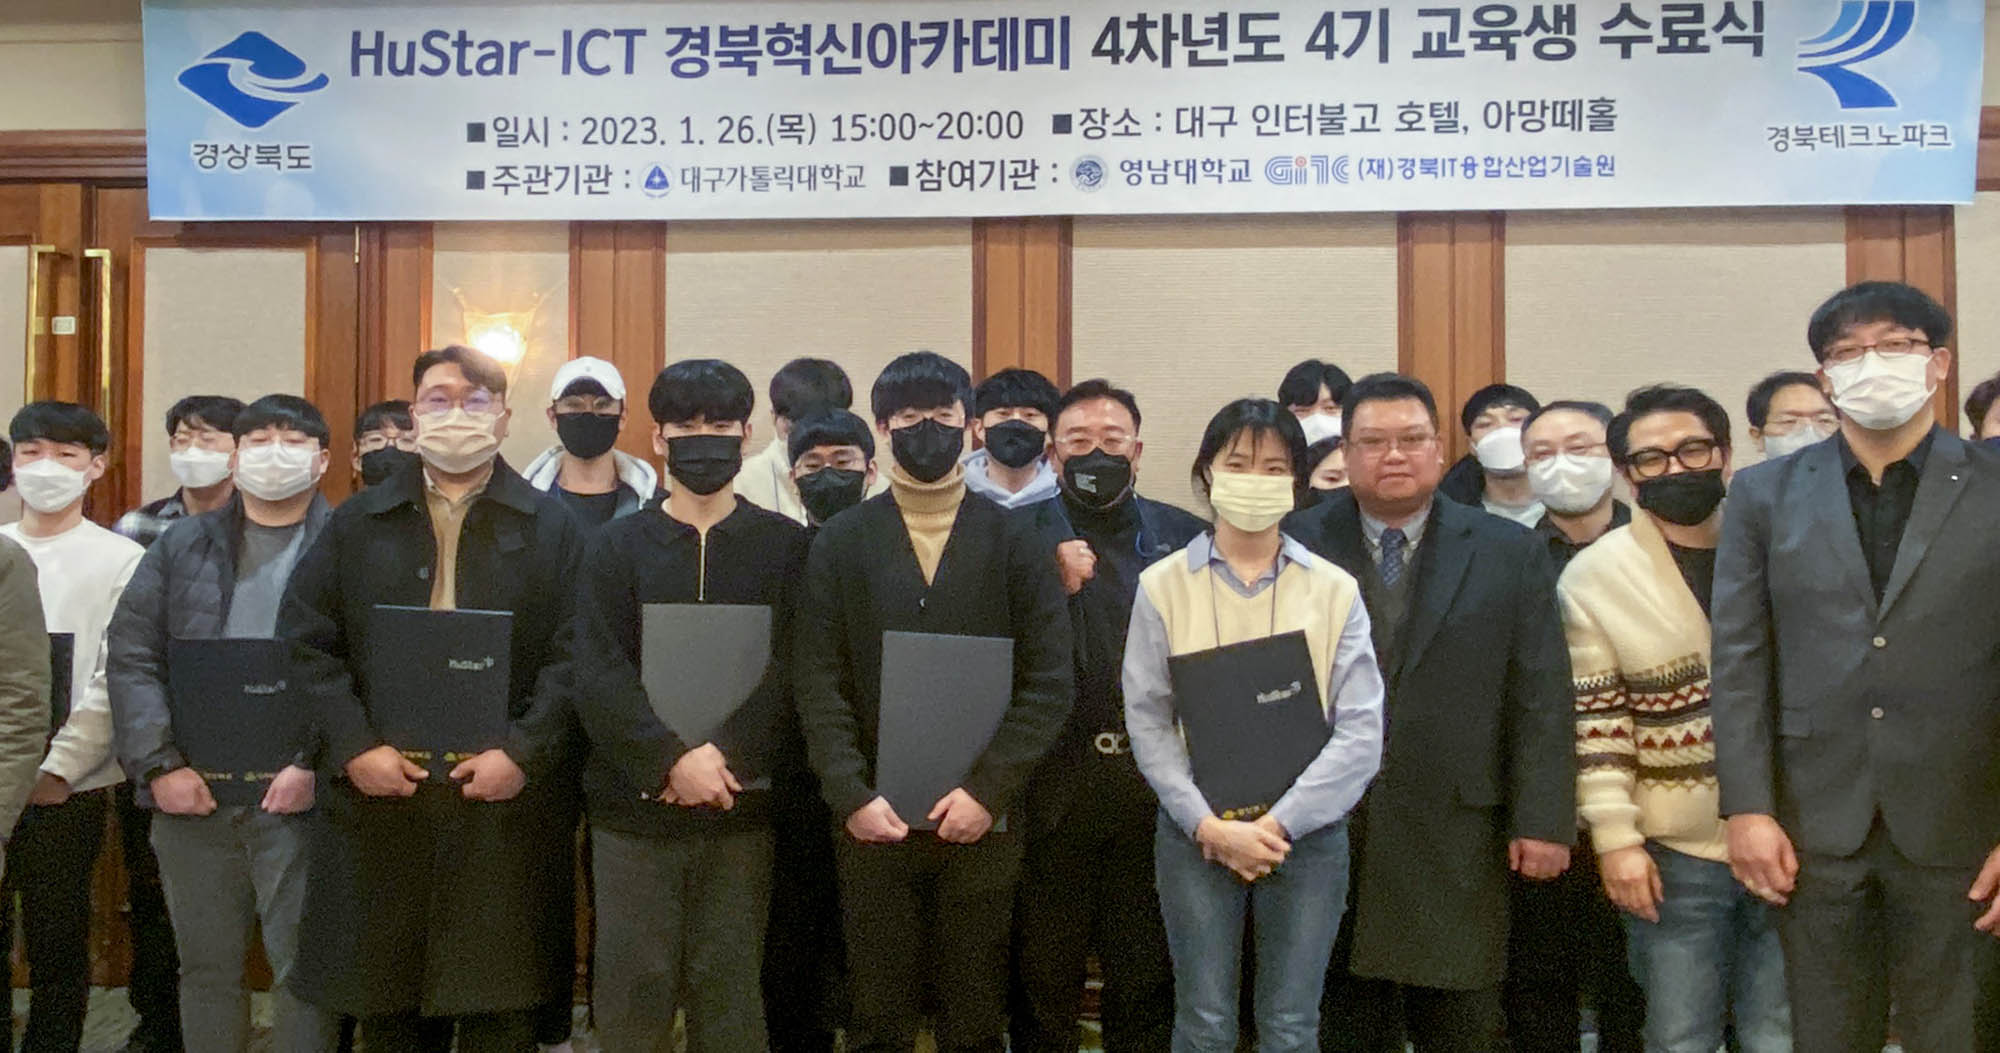 '휴스타-ICT 경북혁신아카데미 4기 교육생 수료식' 개최